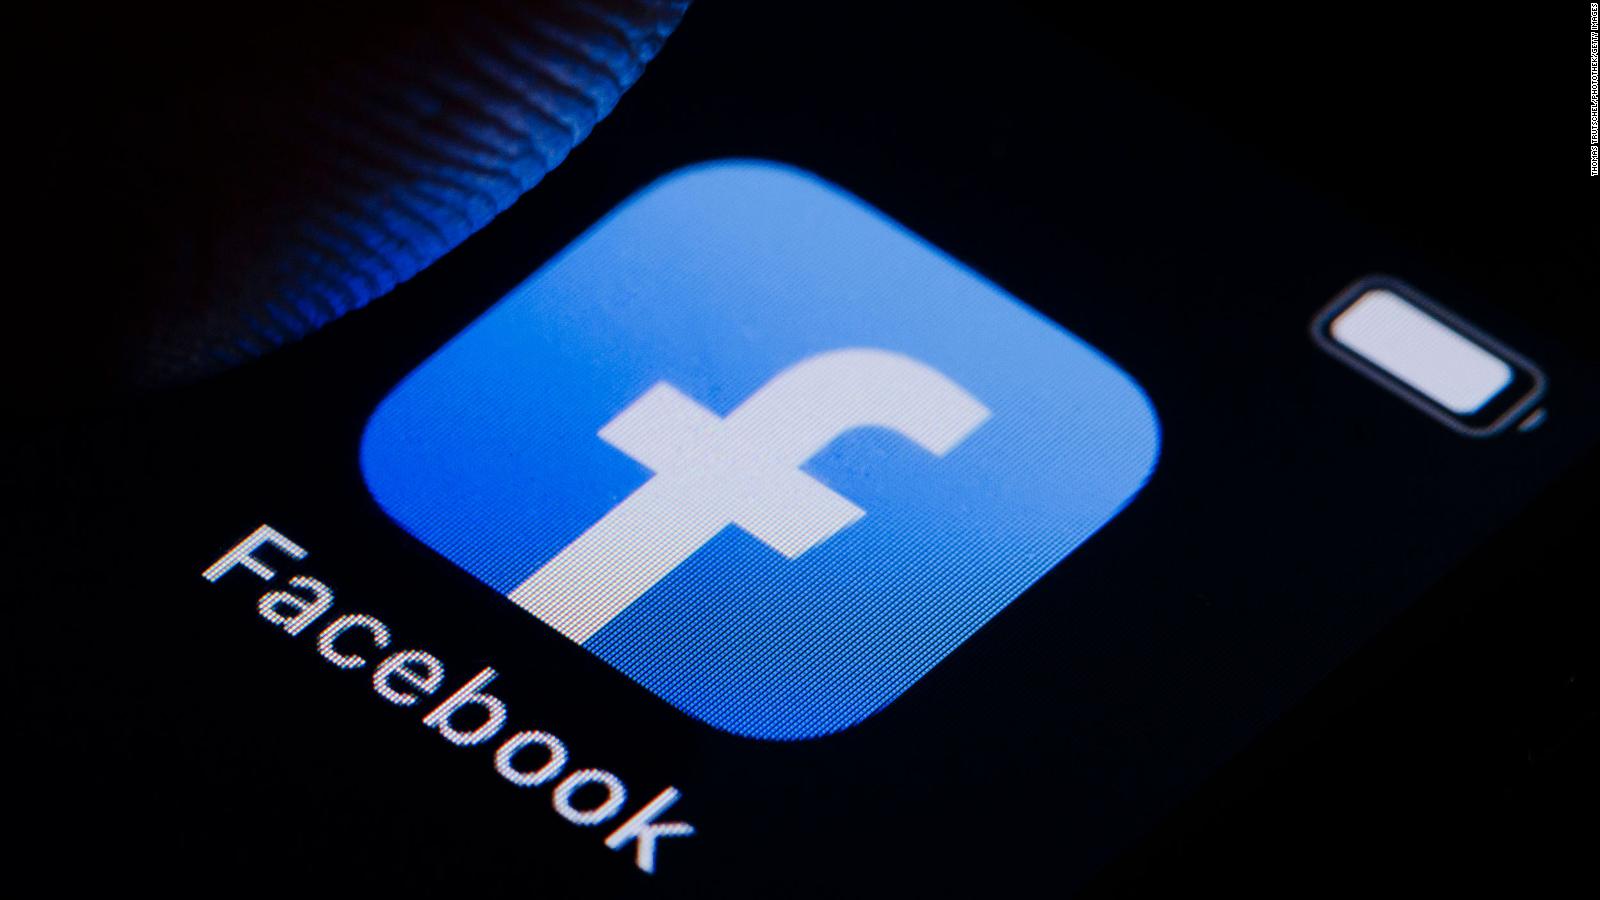 Українська компанія створила чат-бот, який допоможе записати й опублікувати пост у Facebook після смерті